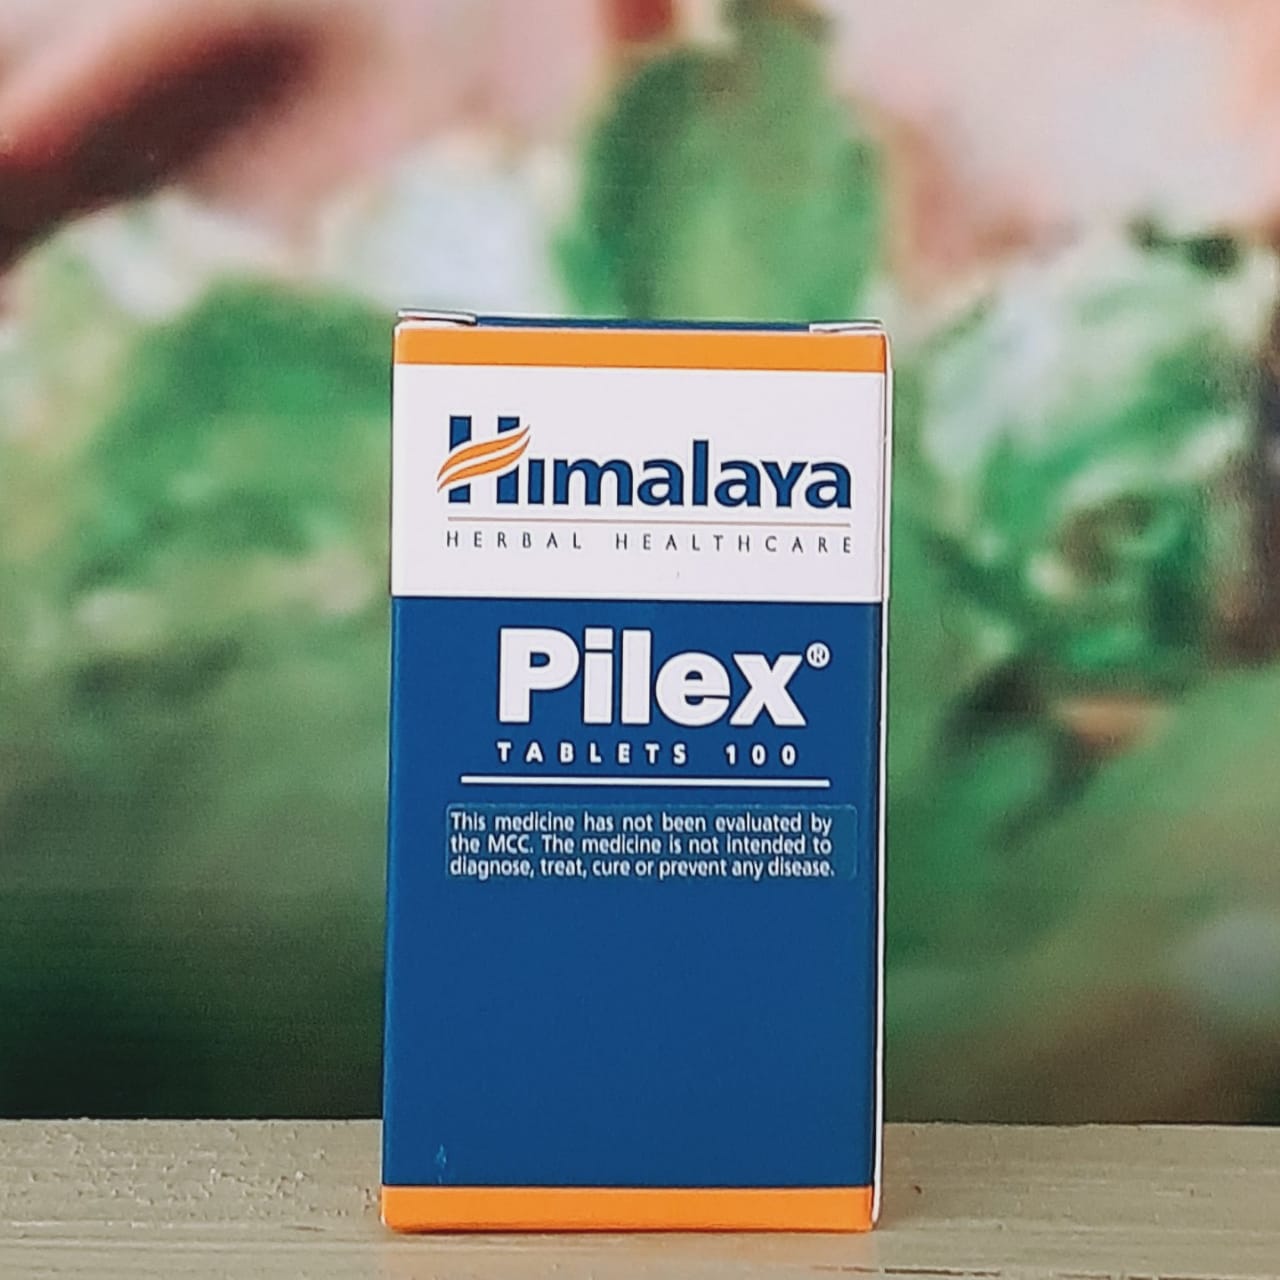 Himalaya Pilex 100 tablets